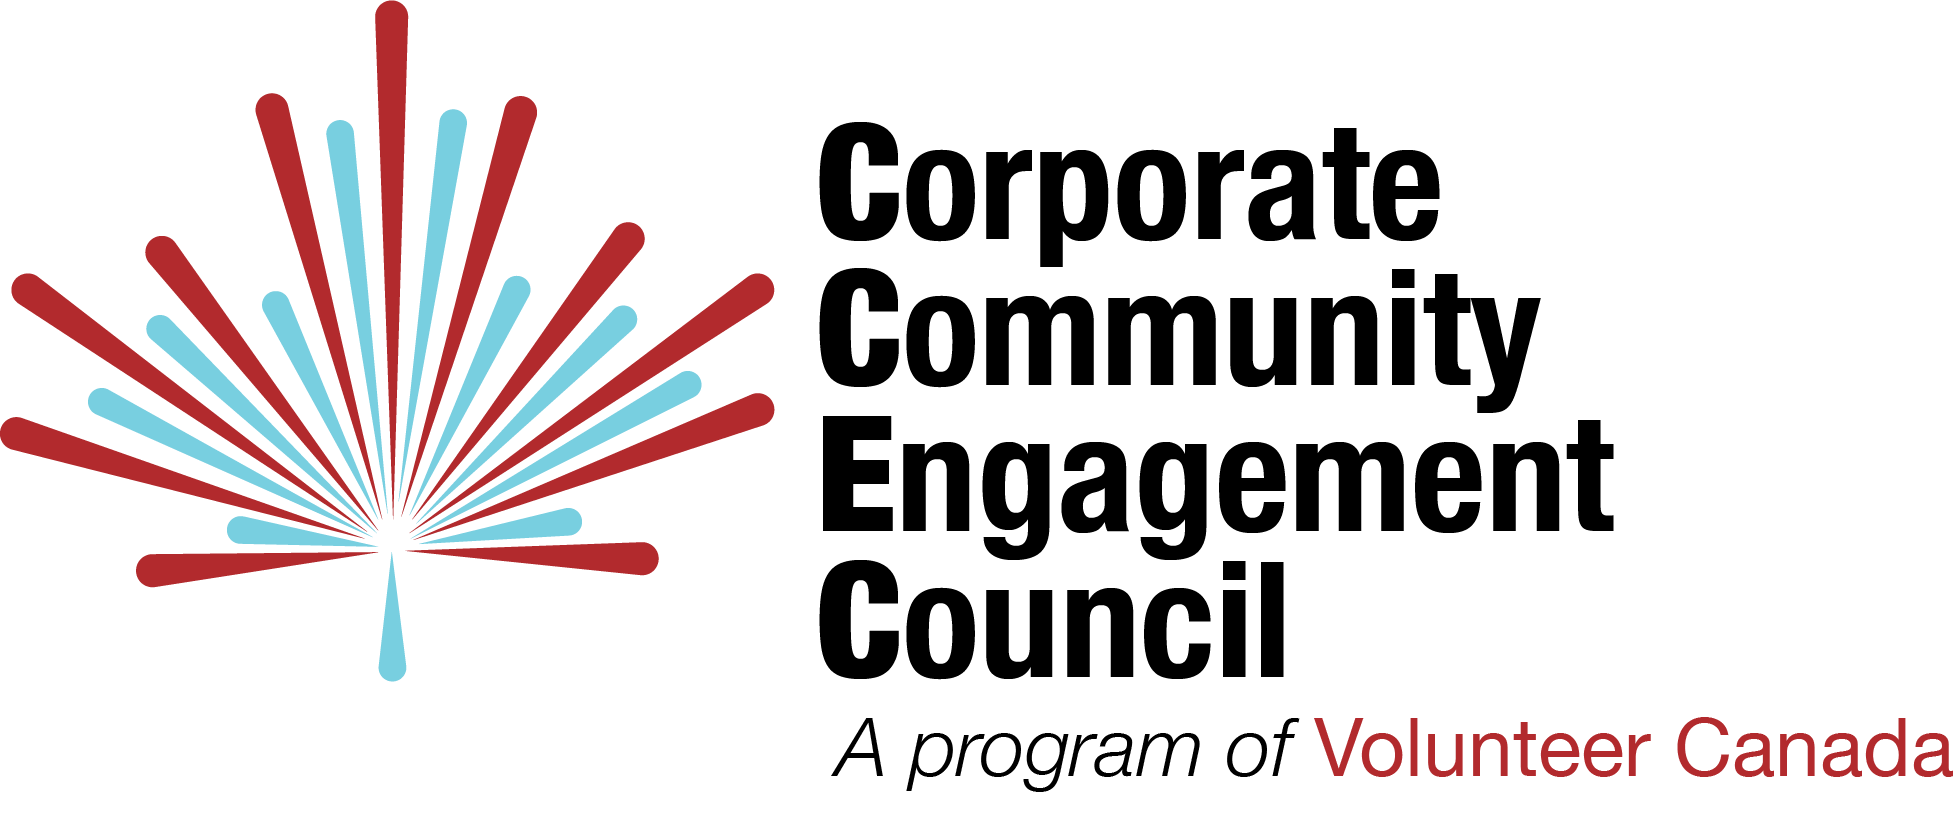 Corporate Community Engagement Council Logo